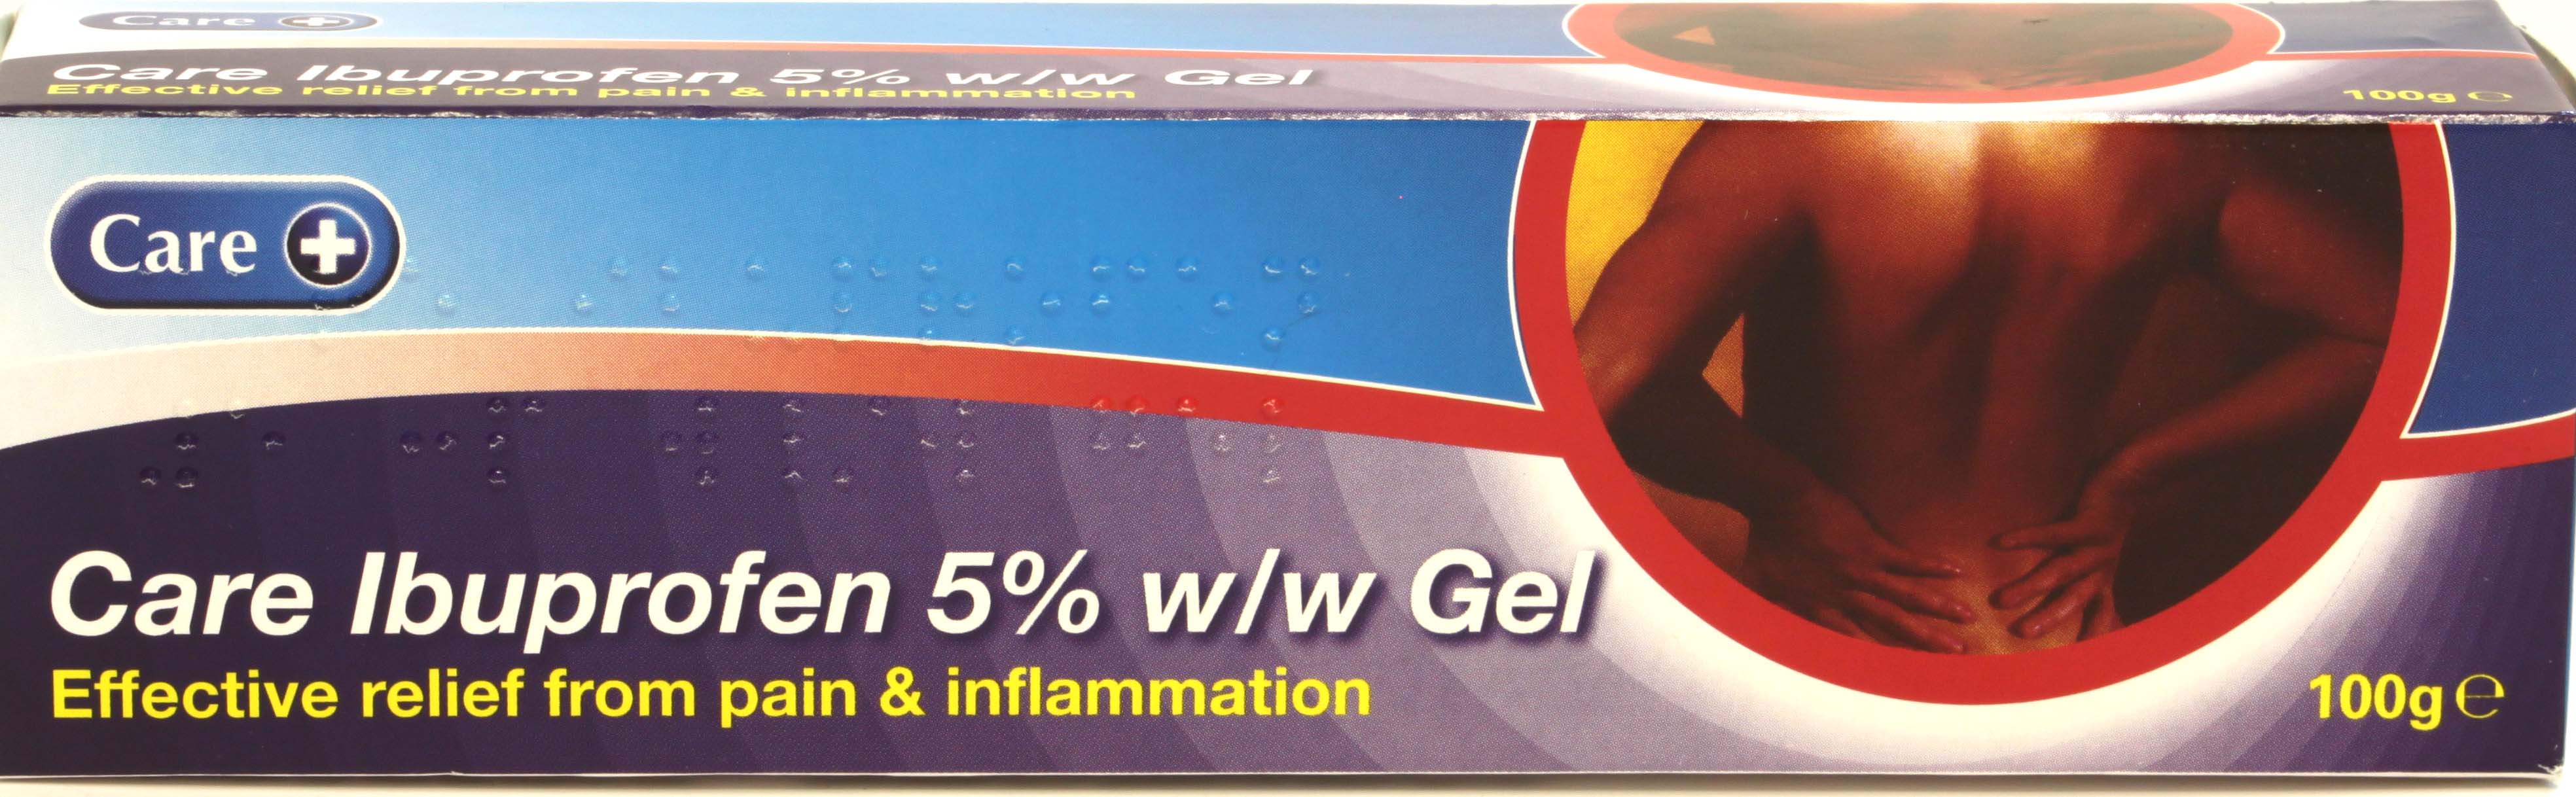 Ibuprofen 5% w/w Gel (Care) 100g